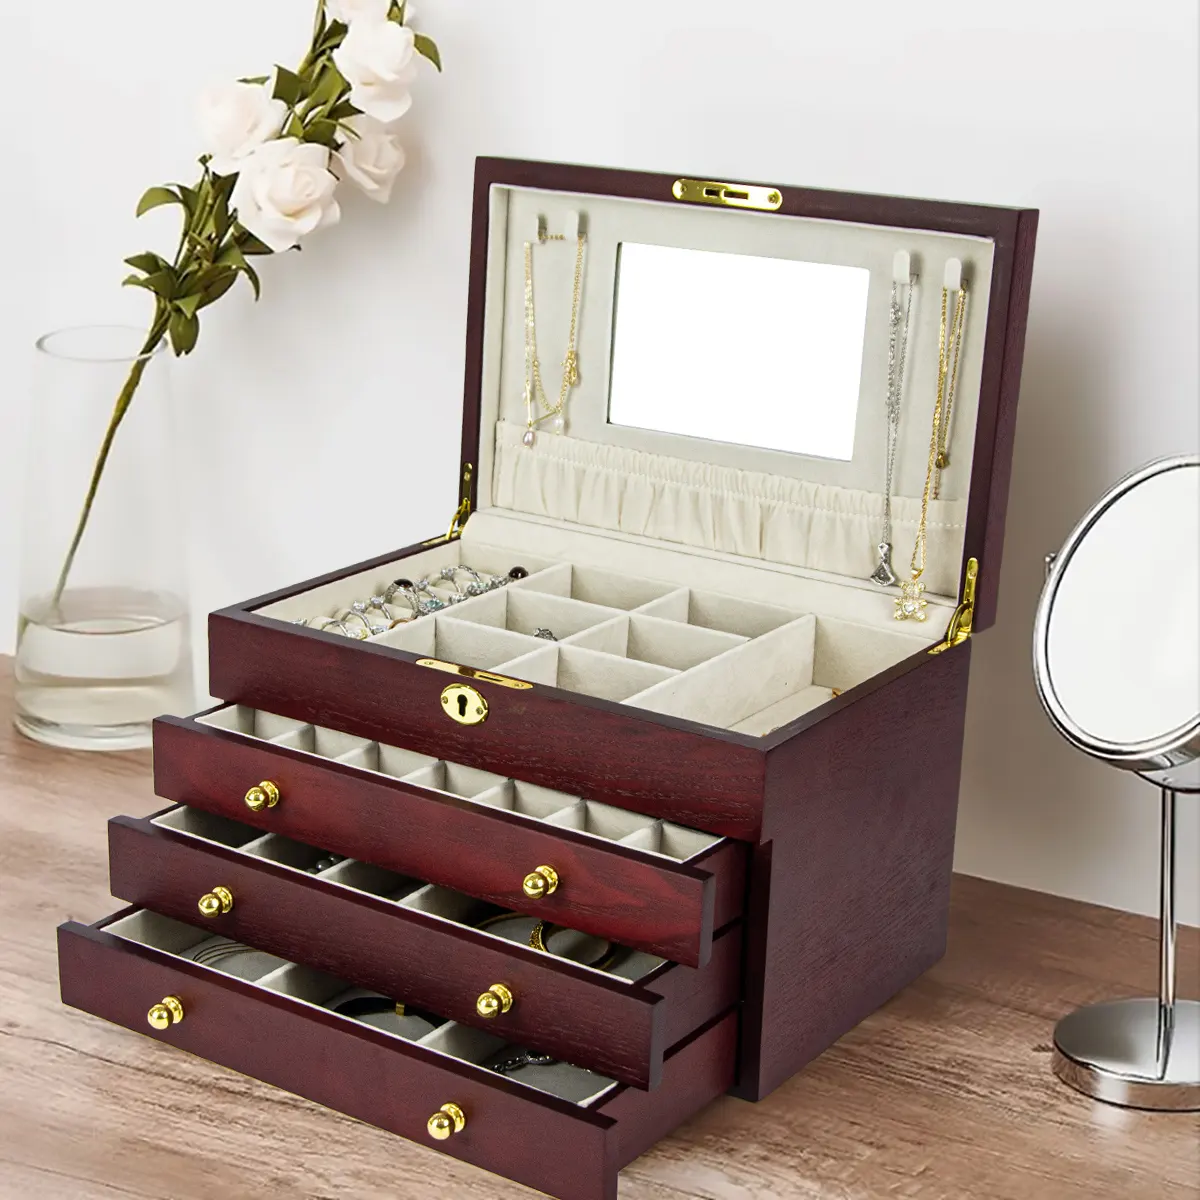 FORTE-joyero multicapa con espejo, caja de almacenamiento de joyería de lujo, Cajón Grande de madera, organizador, gran oferta